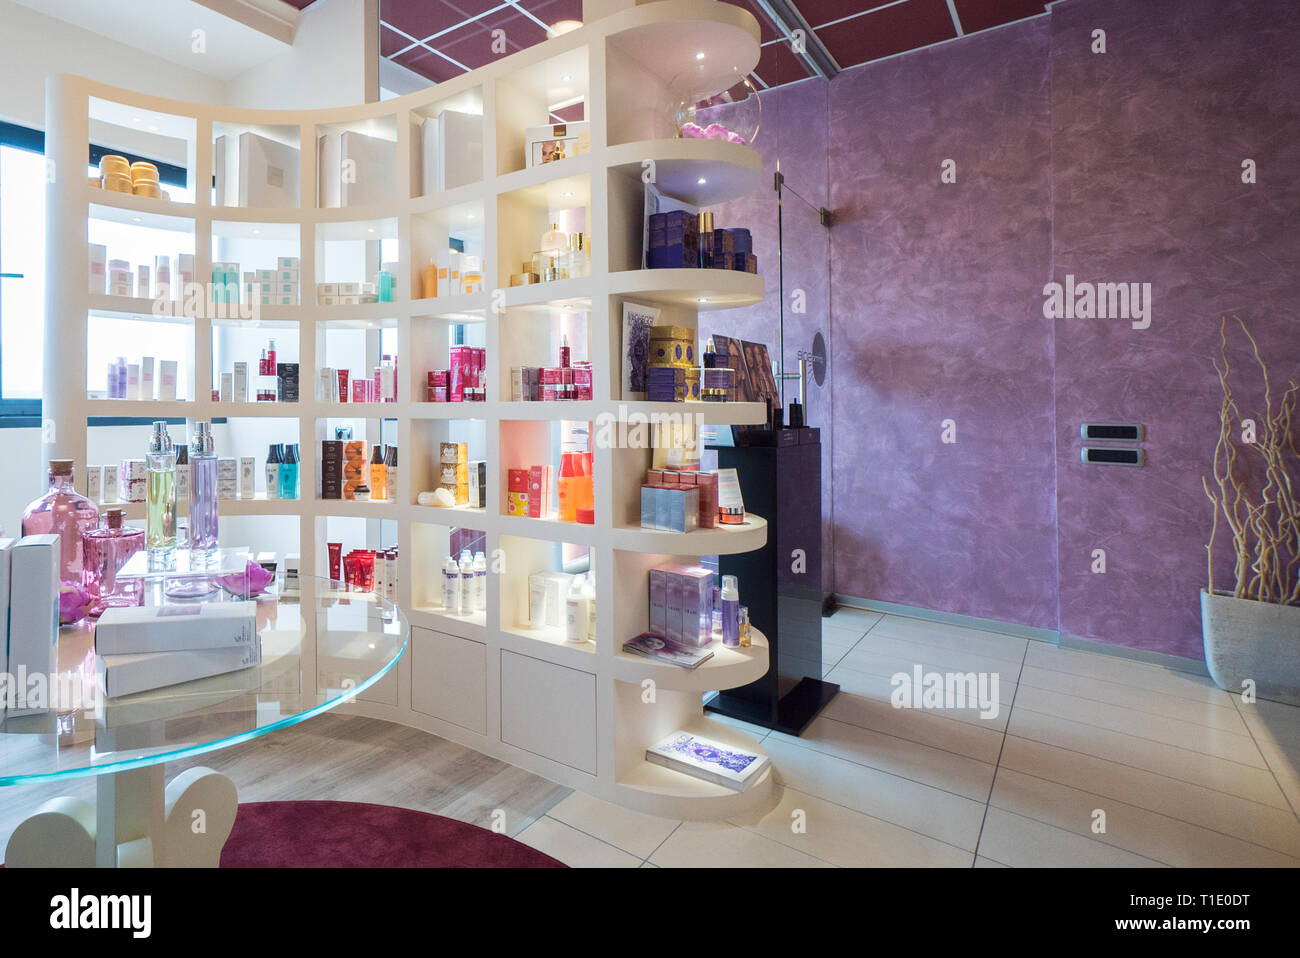 Verona, Italien - 4 April 2016: Kosmetik angezeigt, die auf den Regalen eines modernen Beauty Salon. Stockfoto